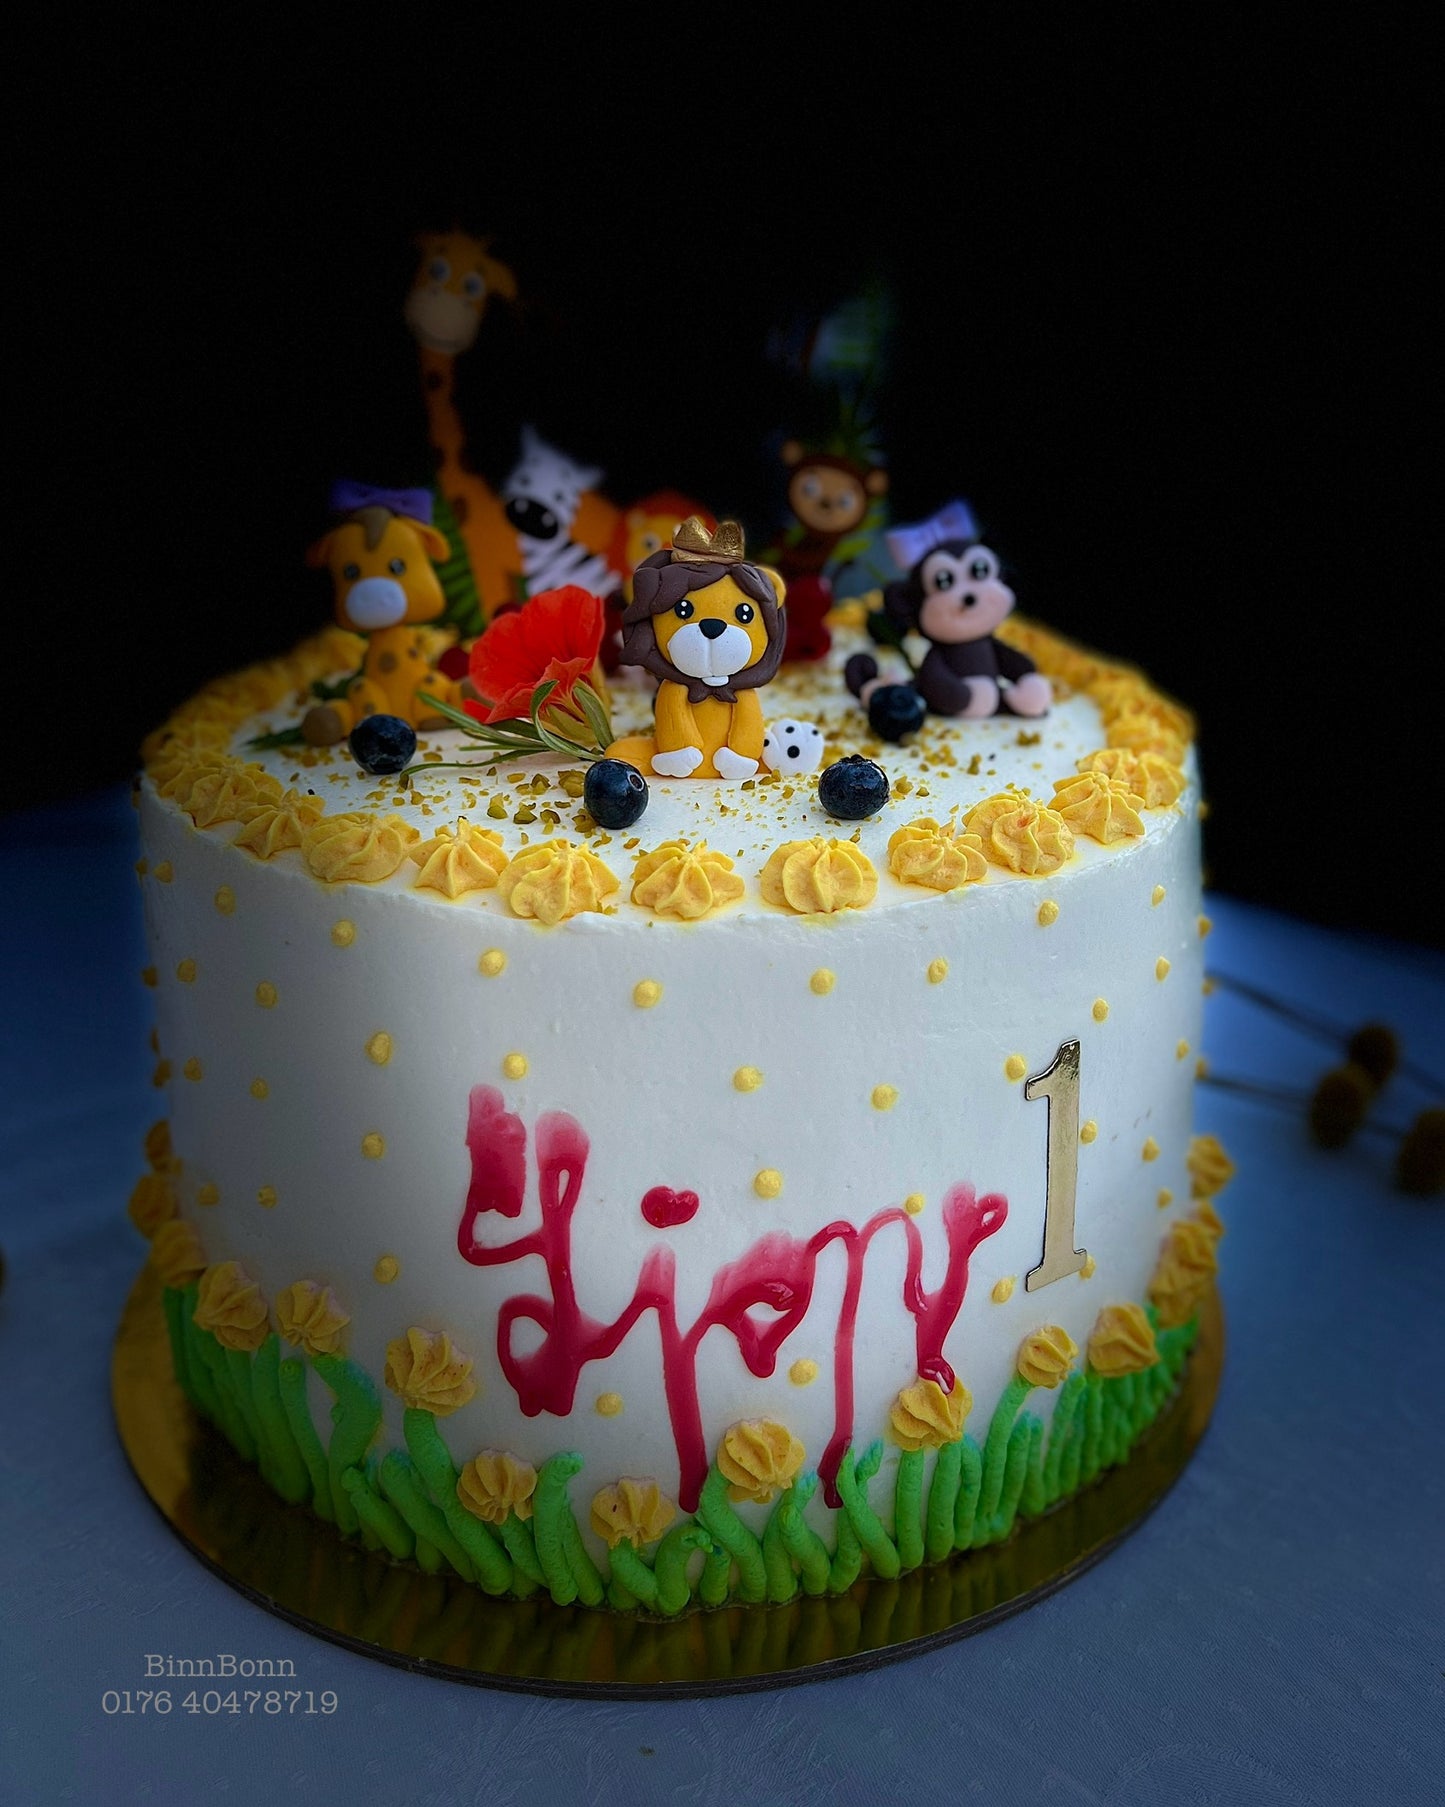 13. Torte "Lion King" zum Kindergeburtstag gefüllt mit frischen Beeren 22 cm